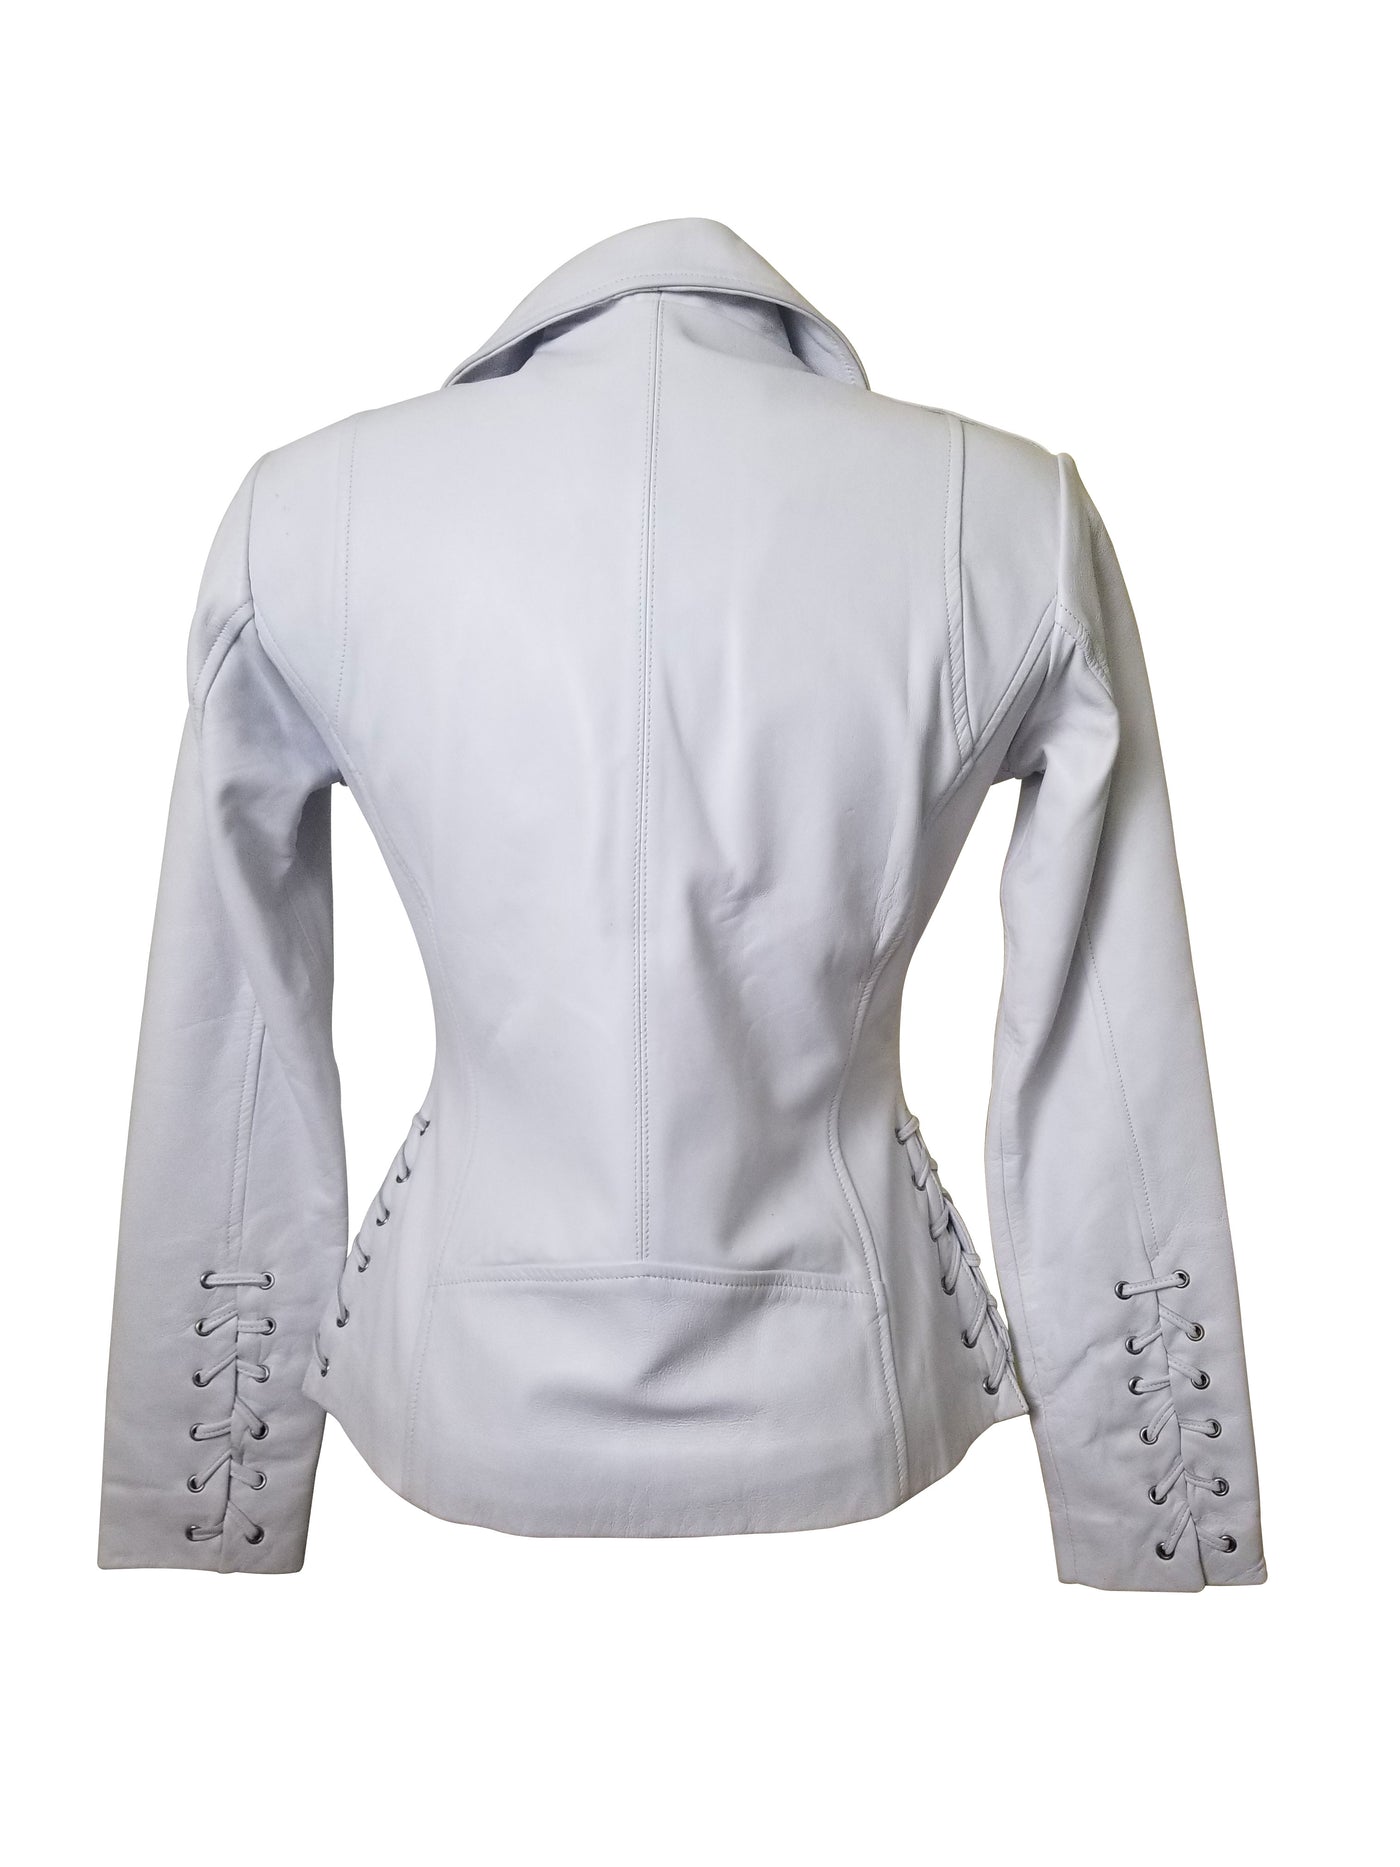 Stylish Callie's white leather biker jacket